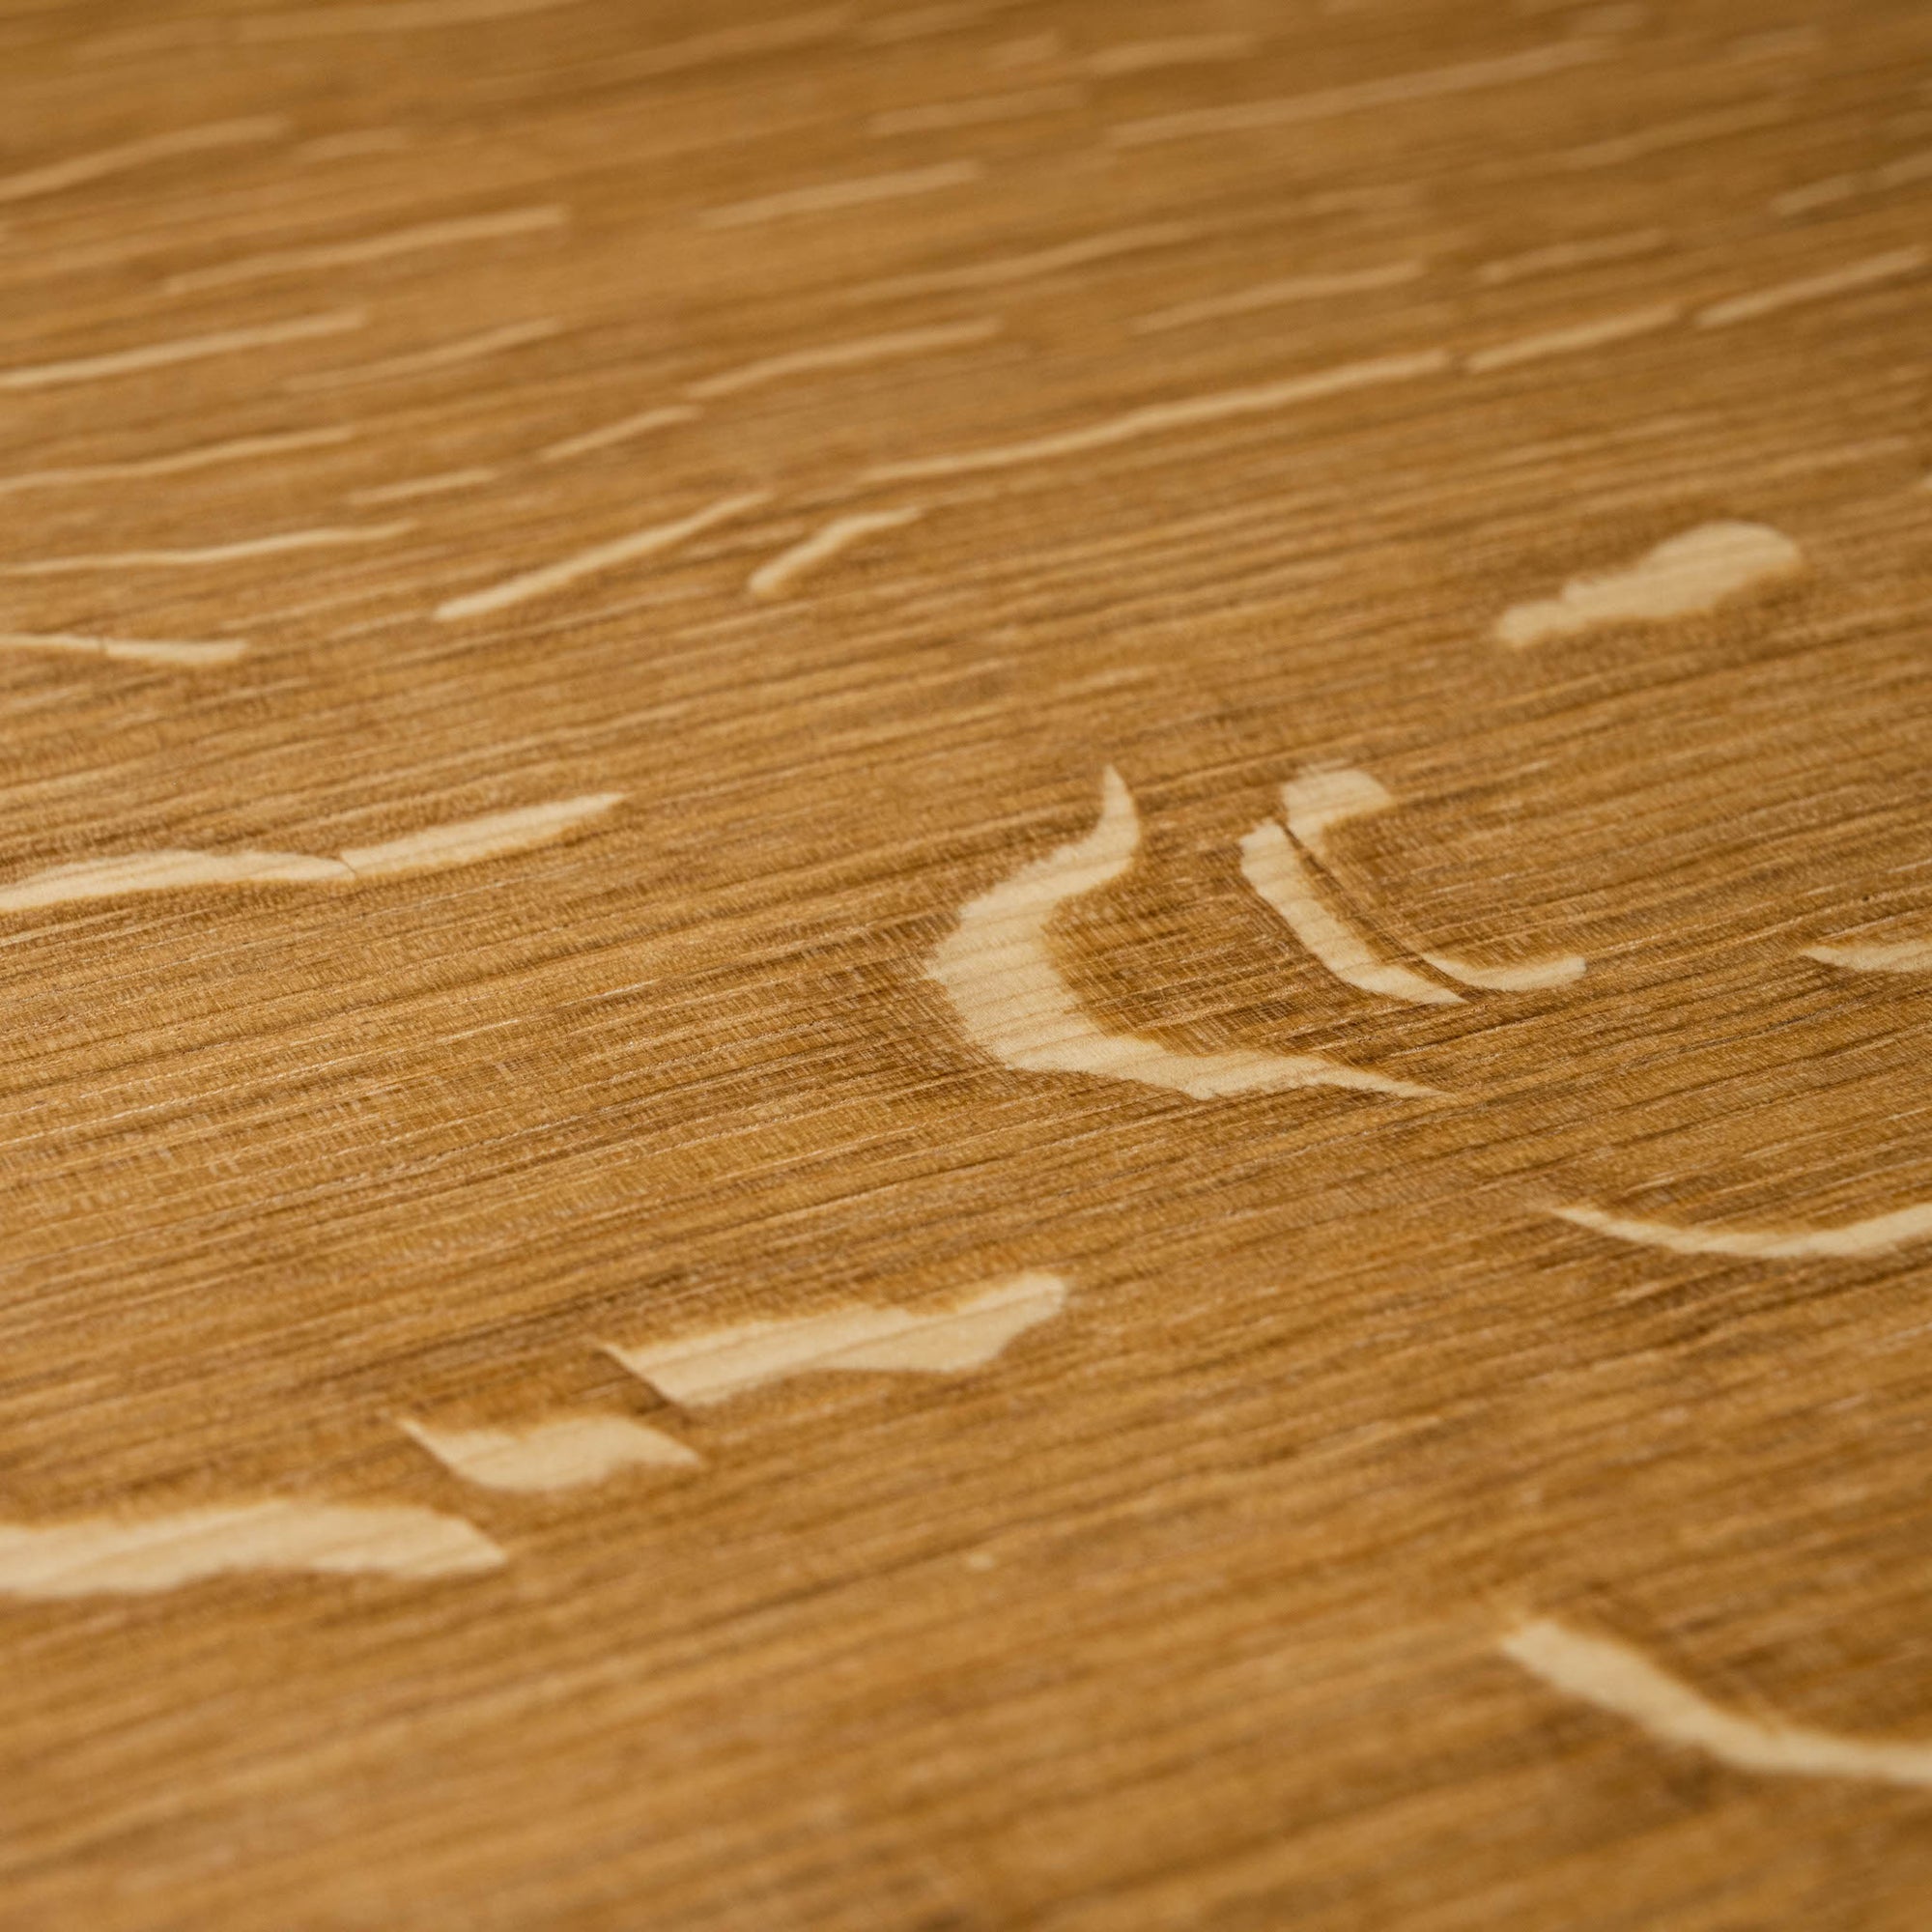 Selwyn House Oak Chopping Board Wood Grain Detail 